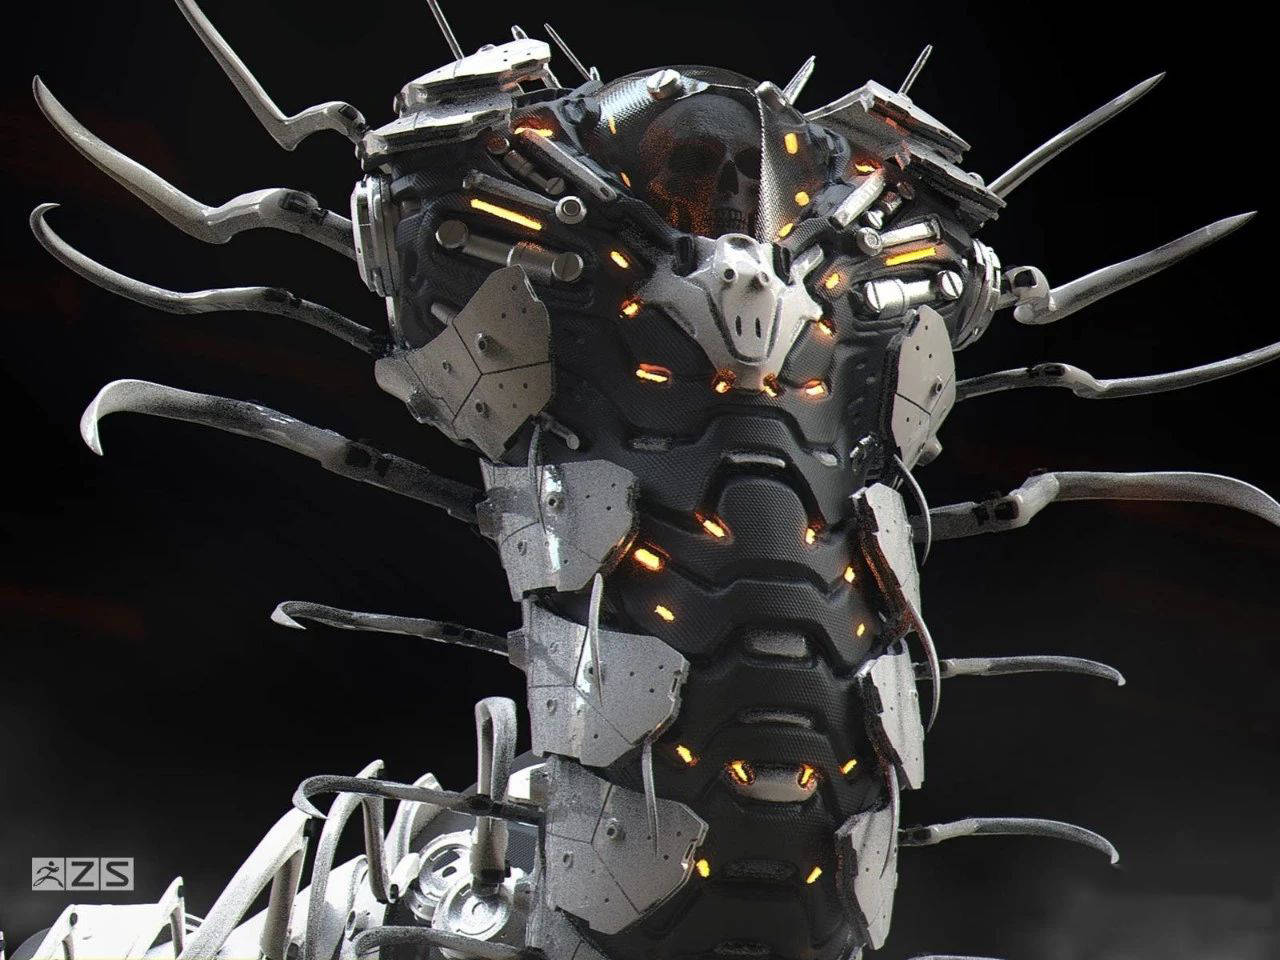 这套科幻机甲简直帅炸了,生物与机械竟能融合出这样的奇妙设计!